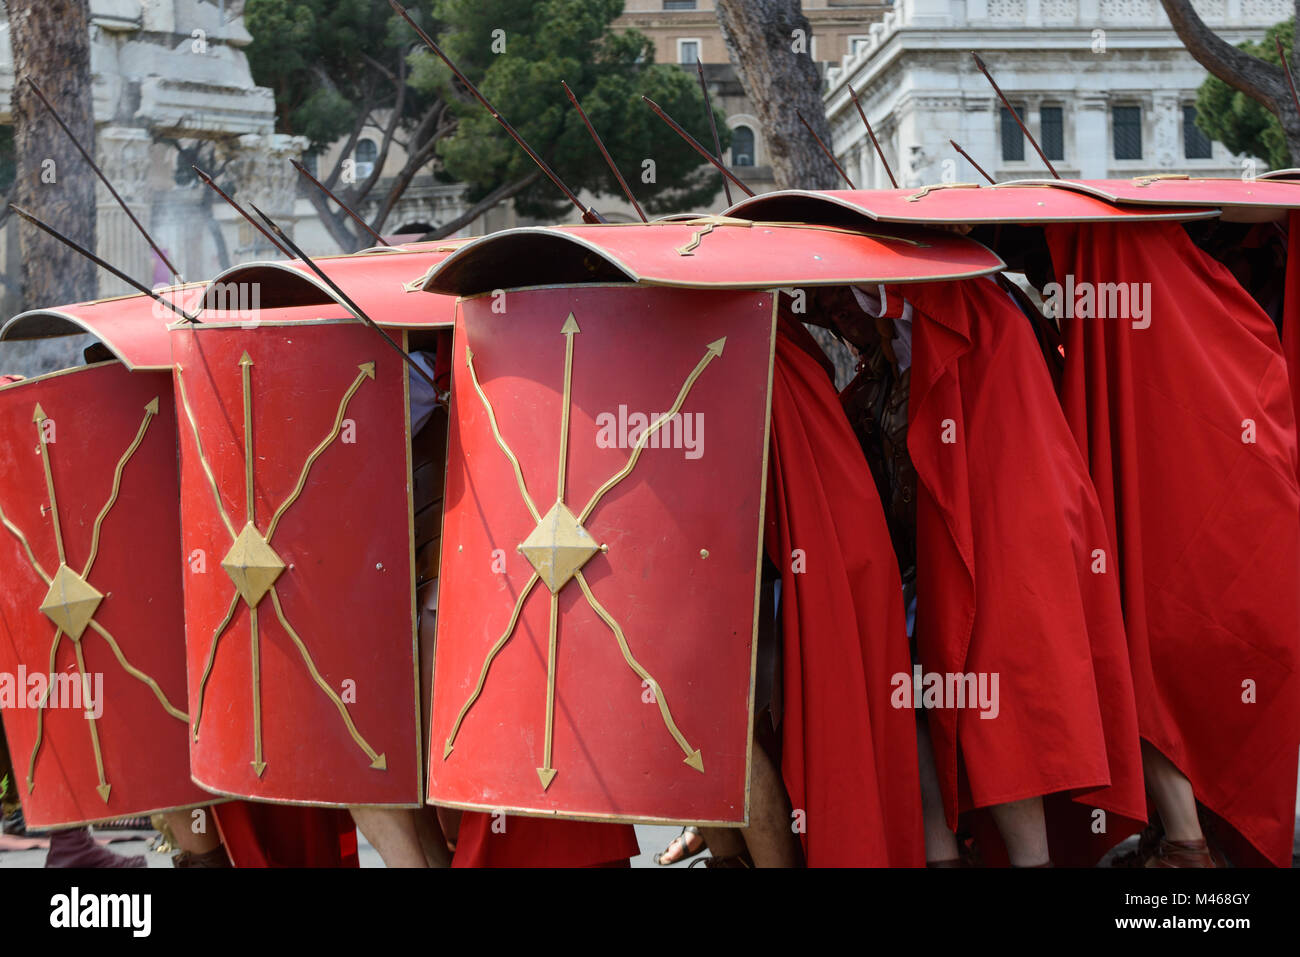 Rom, Italien, 23. April 2017: Die Darstellung der alten Römer in der Geburtstag von Rom, mit Hauptleuten, Soldaten, Legionen, Senatoren, handmai Stockfoto